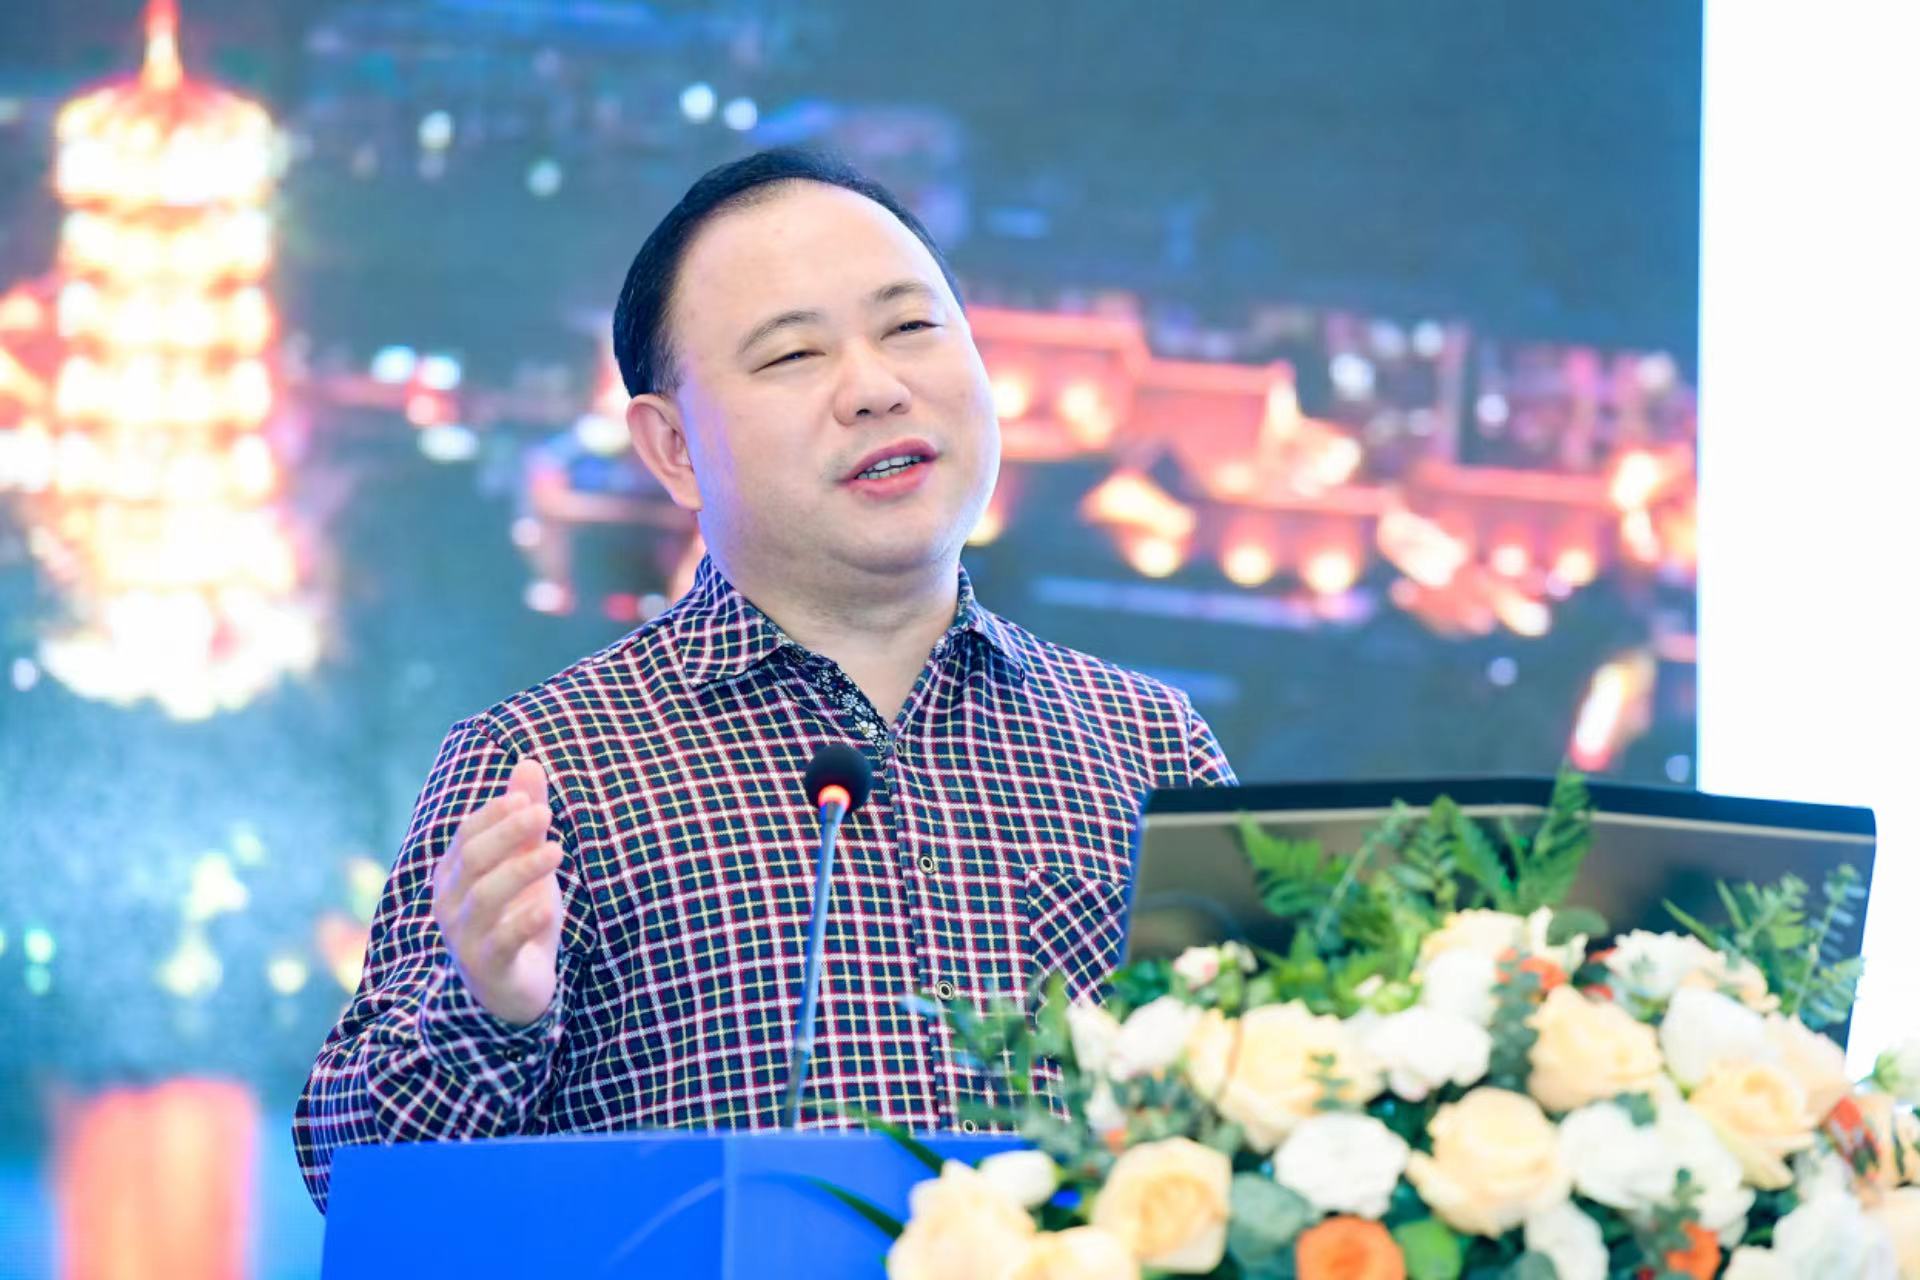 刘民坤,广西大学工商管理学院副院长,教授,博士生导师